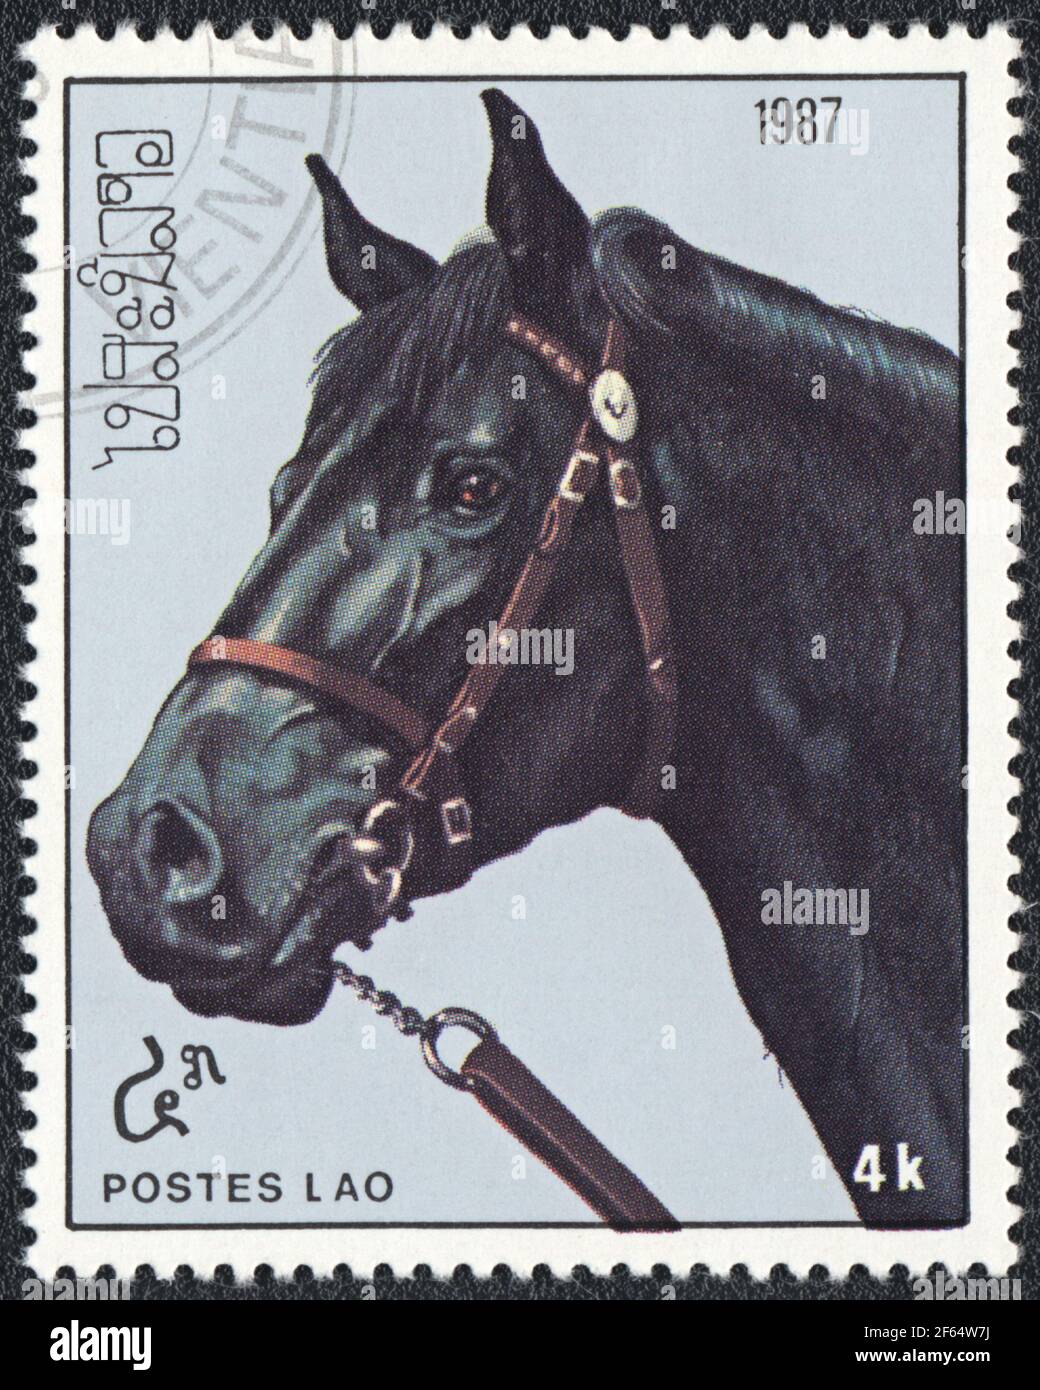 Un timbre-poste montre un cheval noir (Equus ferus cabalus) de la série: Chevaux pur-sang, Laos, 1987 Banque D'Images